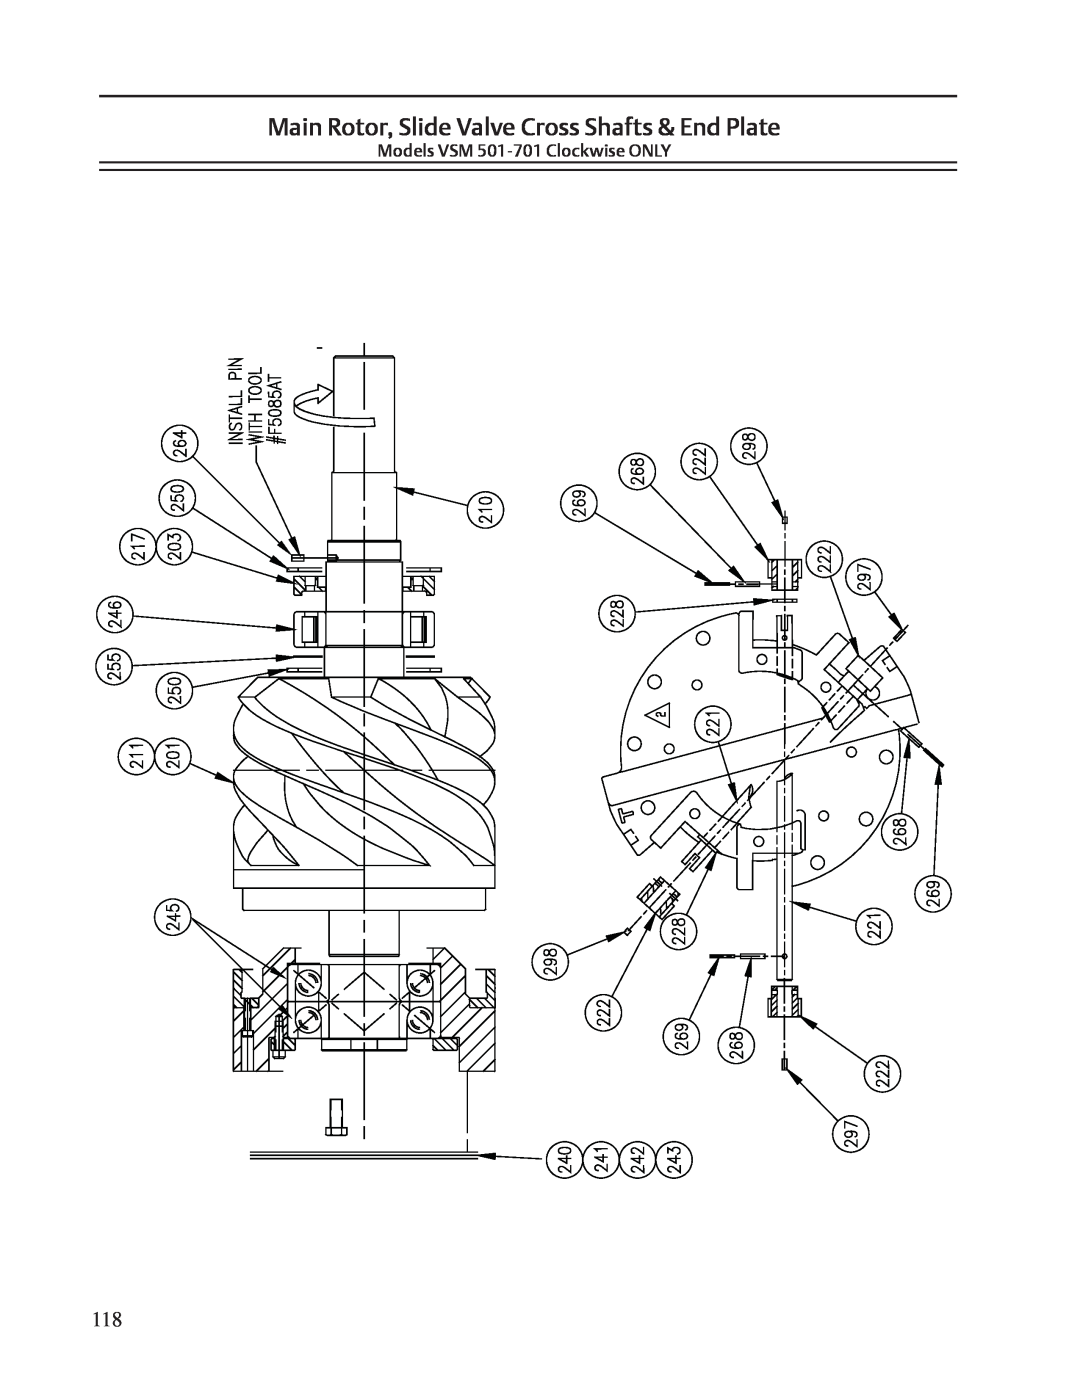 Emerson VSR, VSS service manual Main Rotor, Slide Valve Cross Shafts & End Plate, Models VSM 501-701 Clockwise ONLY 